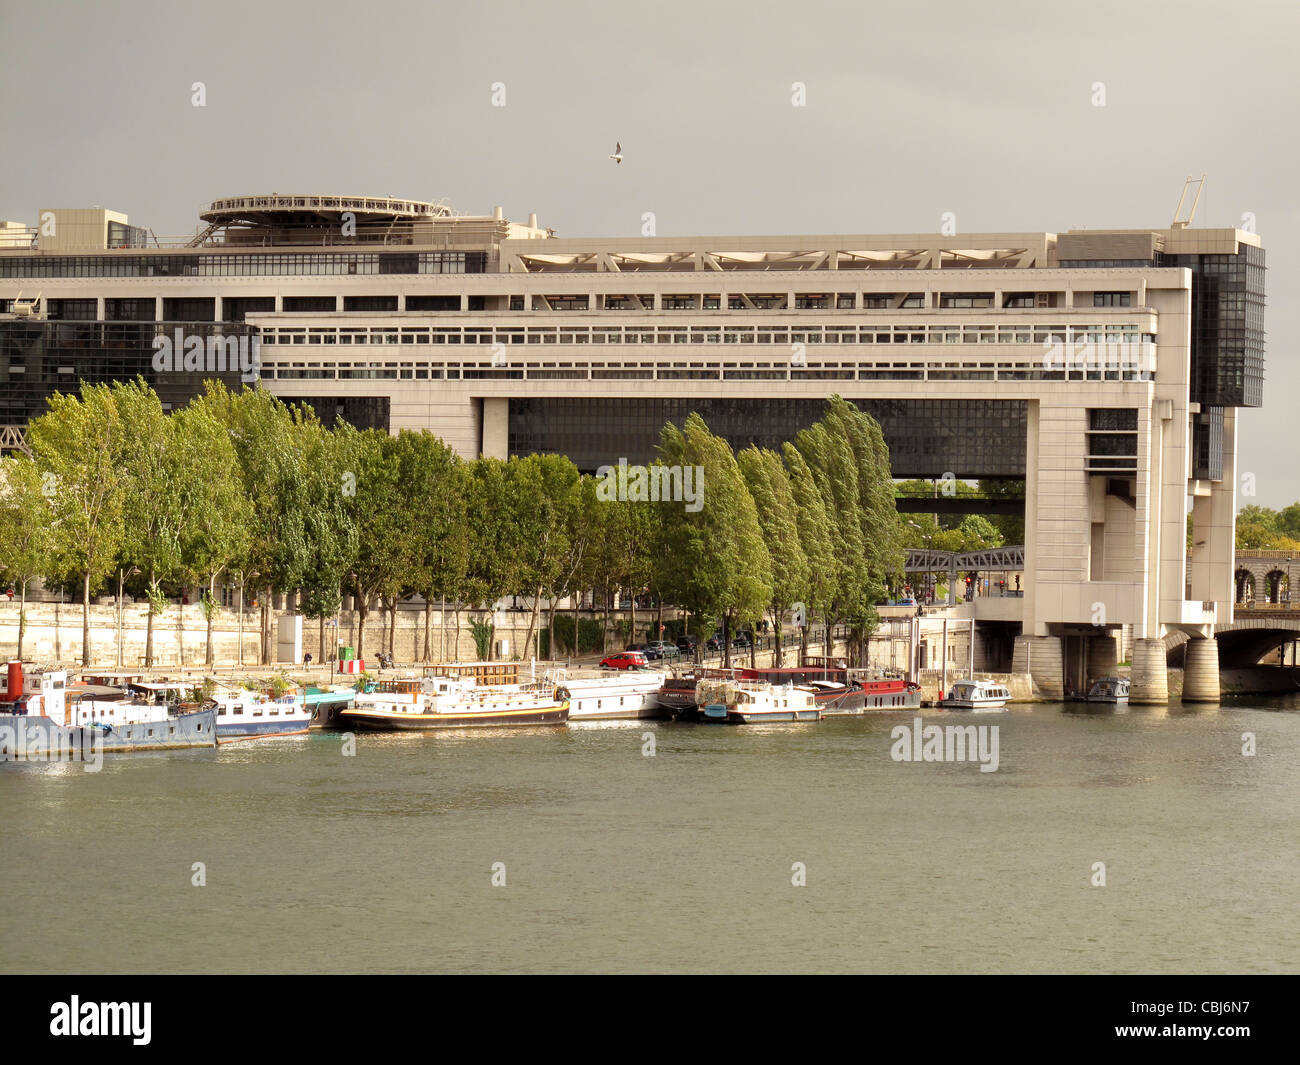 Finance ministry,Seine river,Quai de la Rapee,Austerlitz,Paris,France Stock Photo